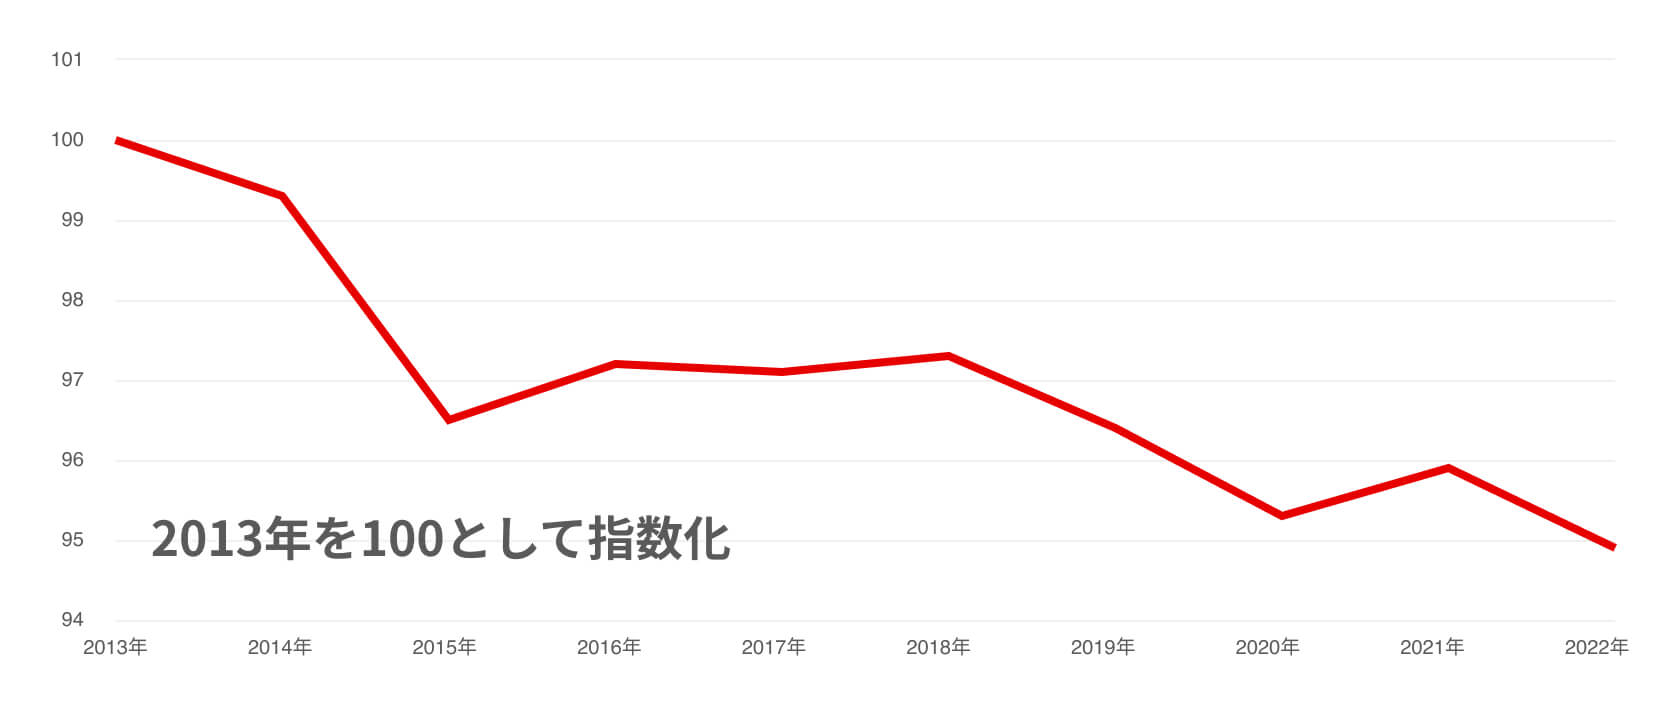 日本の実質賃金指数